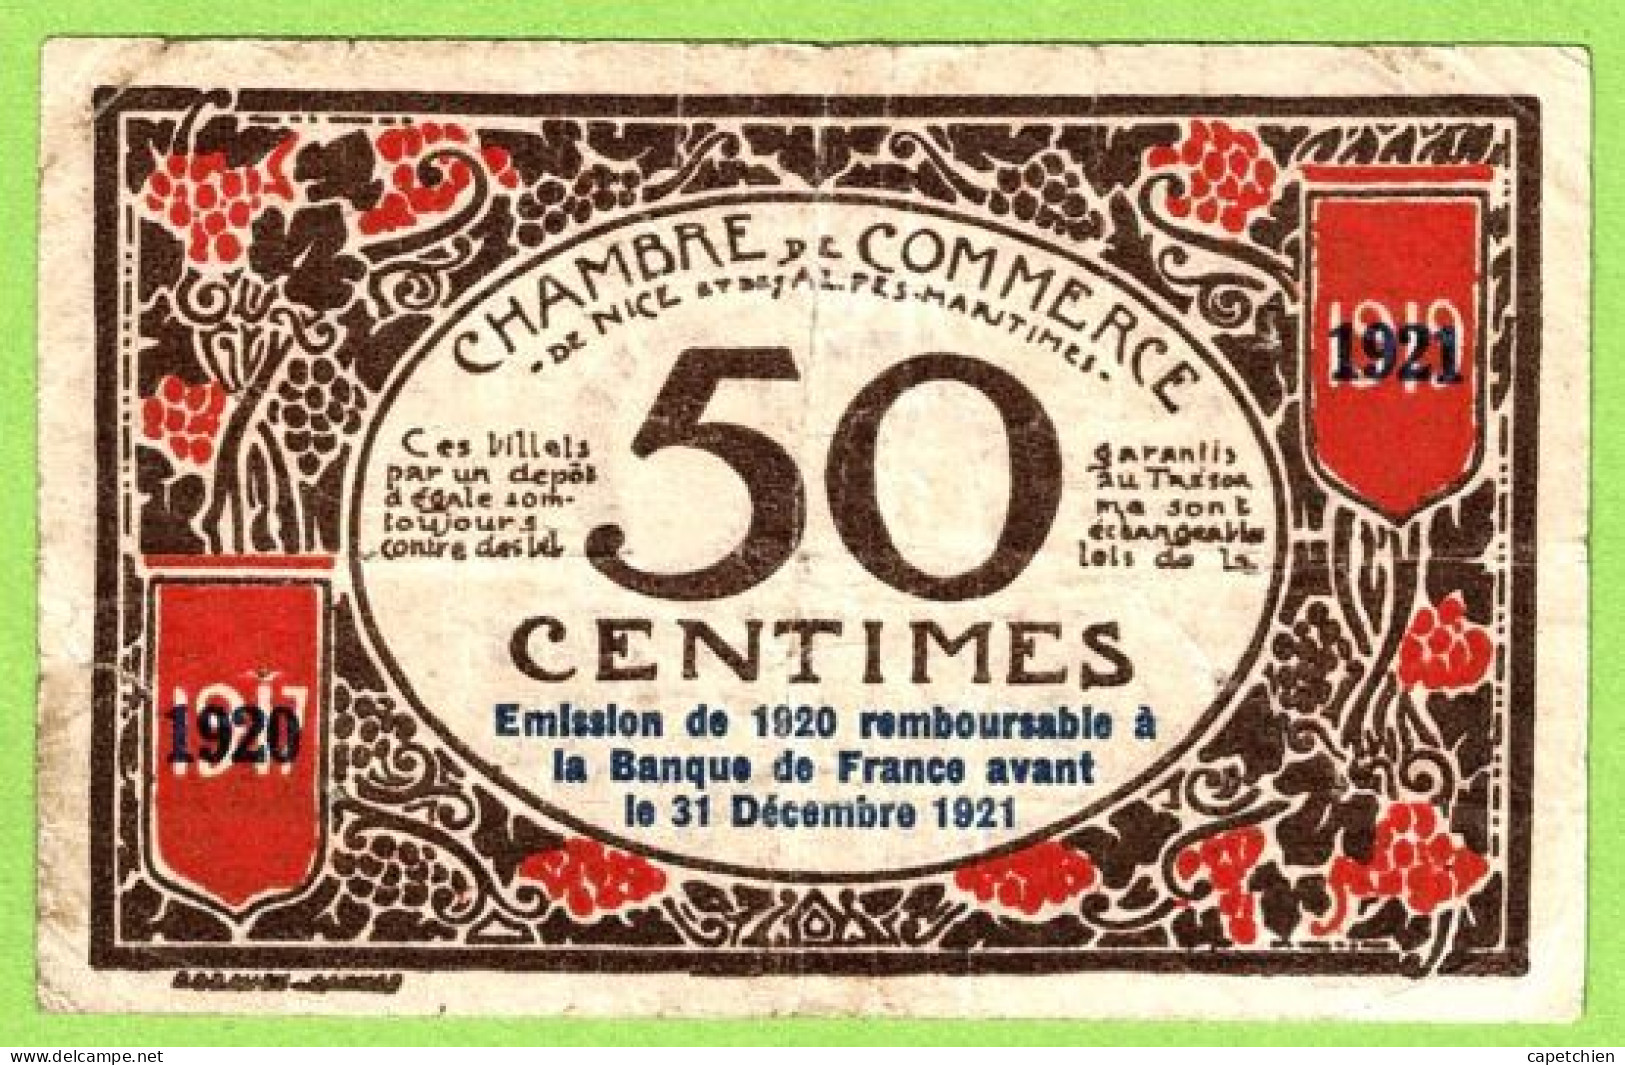 FRANCE / CHAMBRE De COMMERCE / NICE - ALPES MARITIMES / 50 CENTIMES / 1917 - 1921 SURCHARGE 1920 - 1921 / N° 17466 - Chambre De Commerce